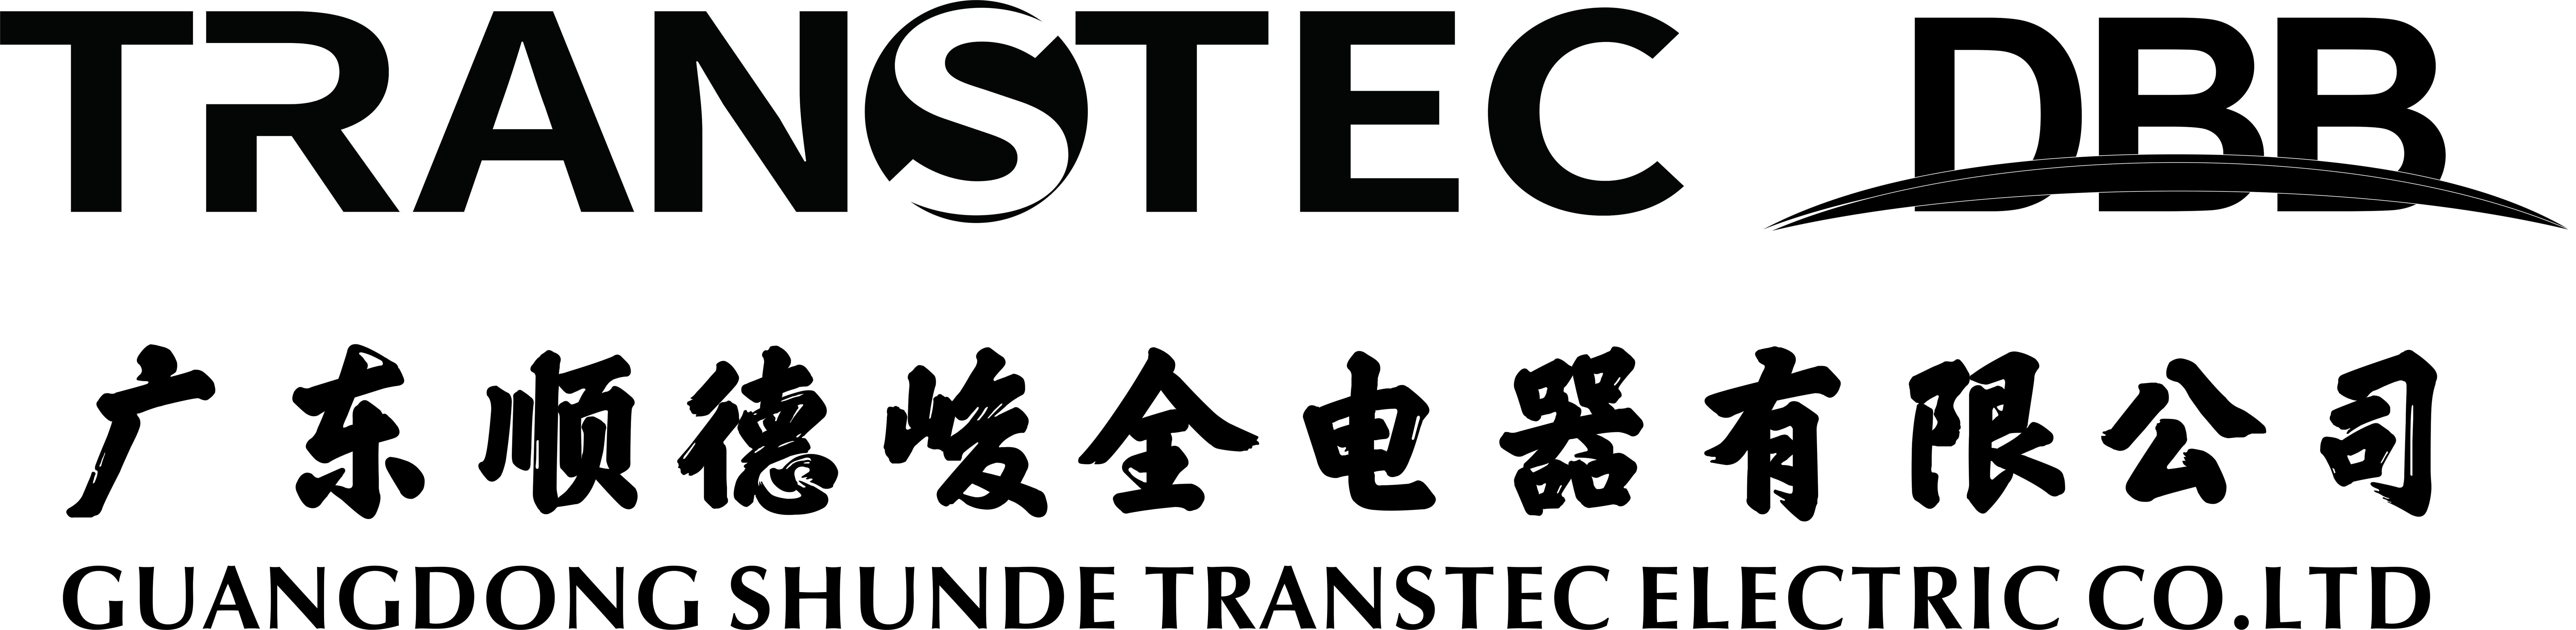 TransTec-DBB Ventilator